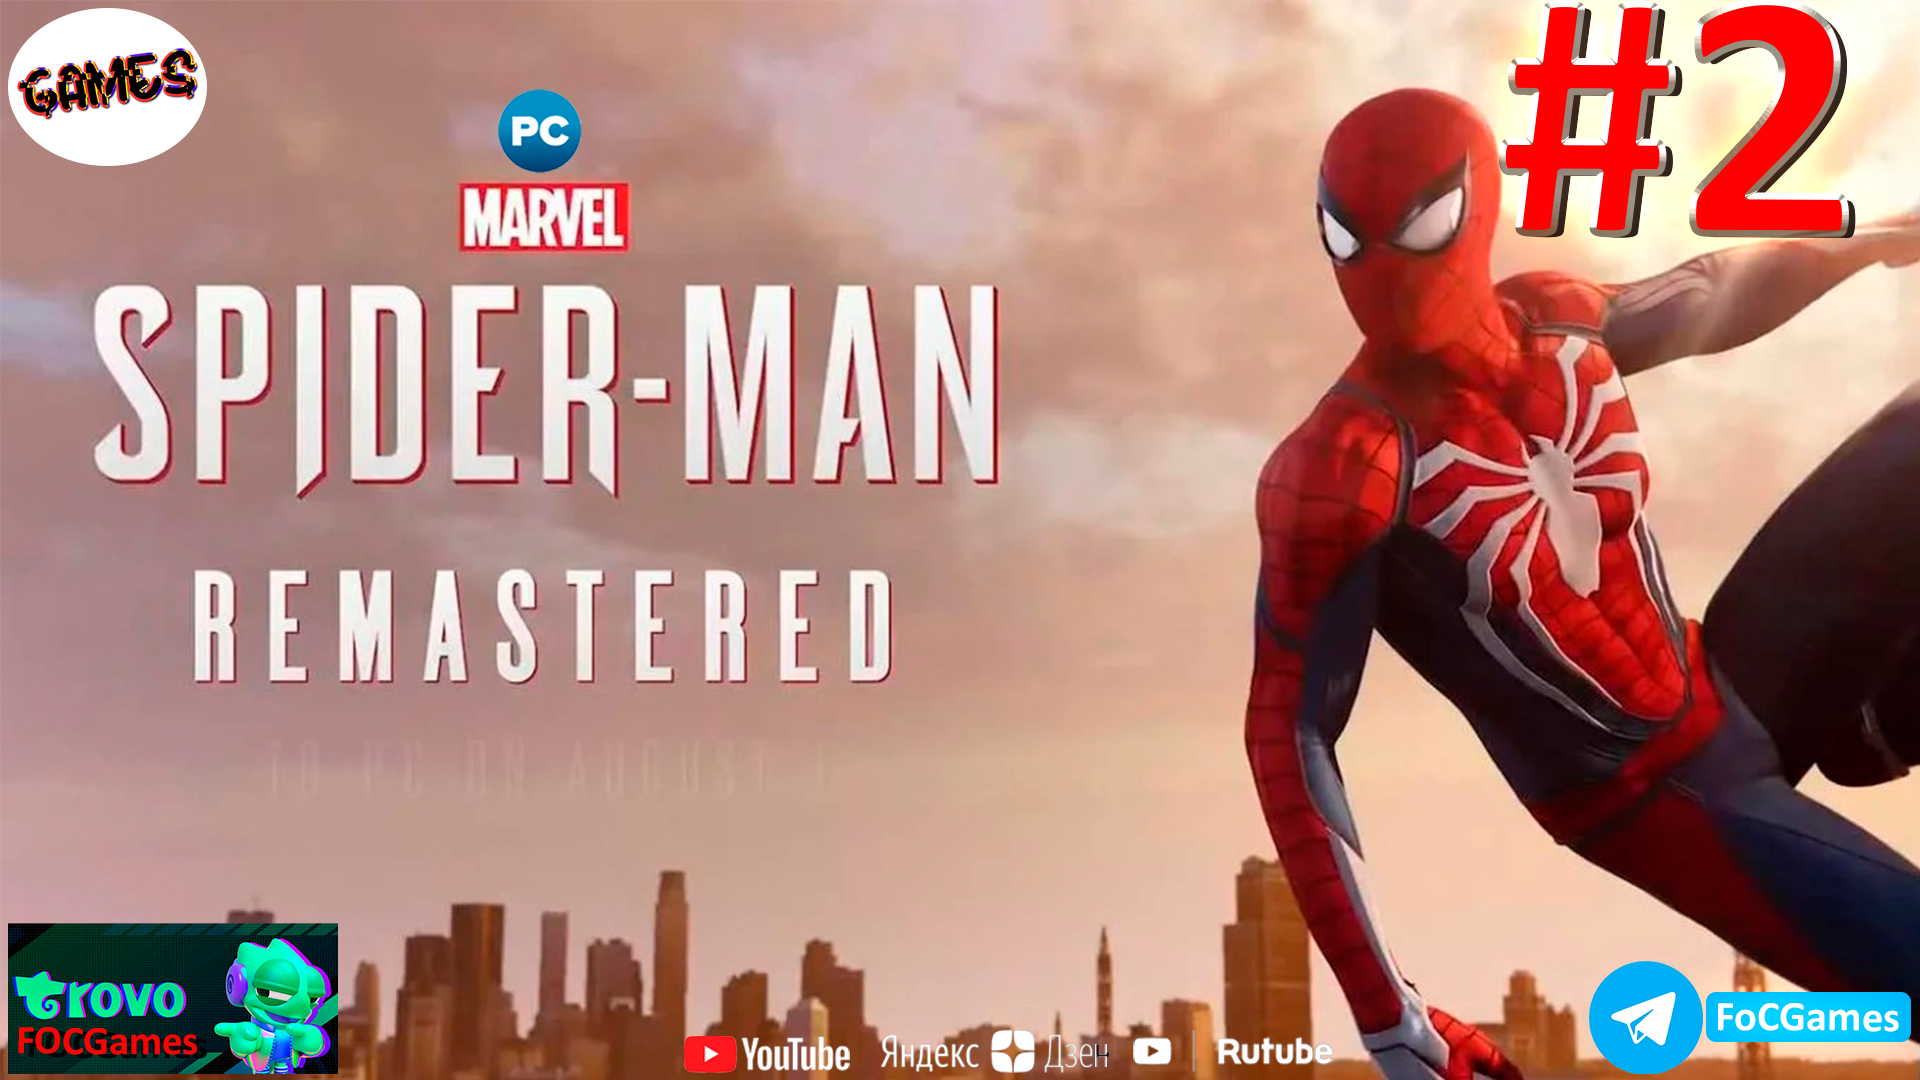 Marvel’s Spider-Man Remastered➤СТРИМ➤Полное прохождение #2➤Человек-Паук 2022➤ ПК ➤Геймплей➤FoC Games